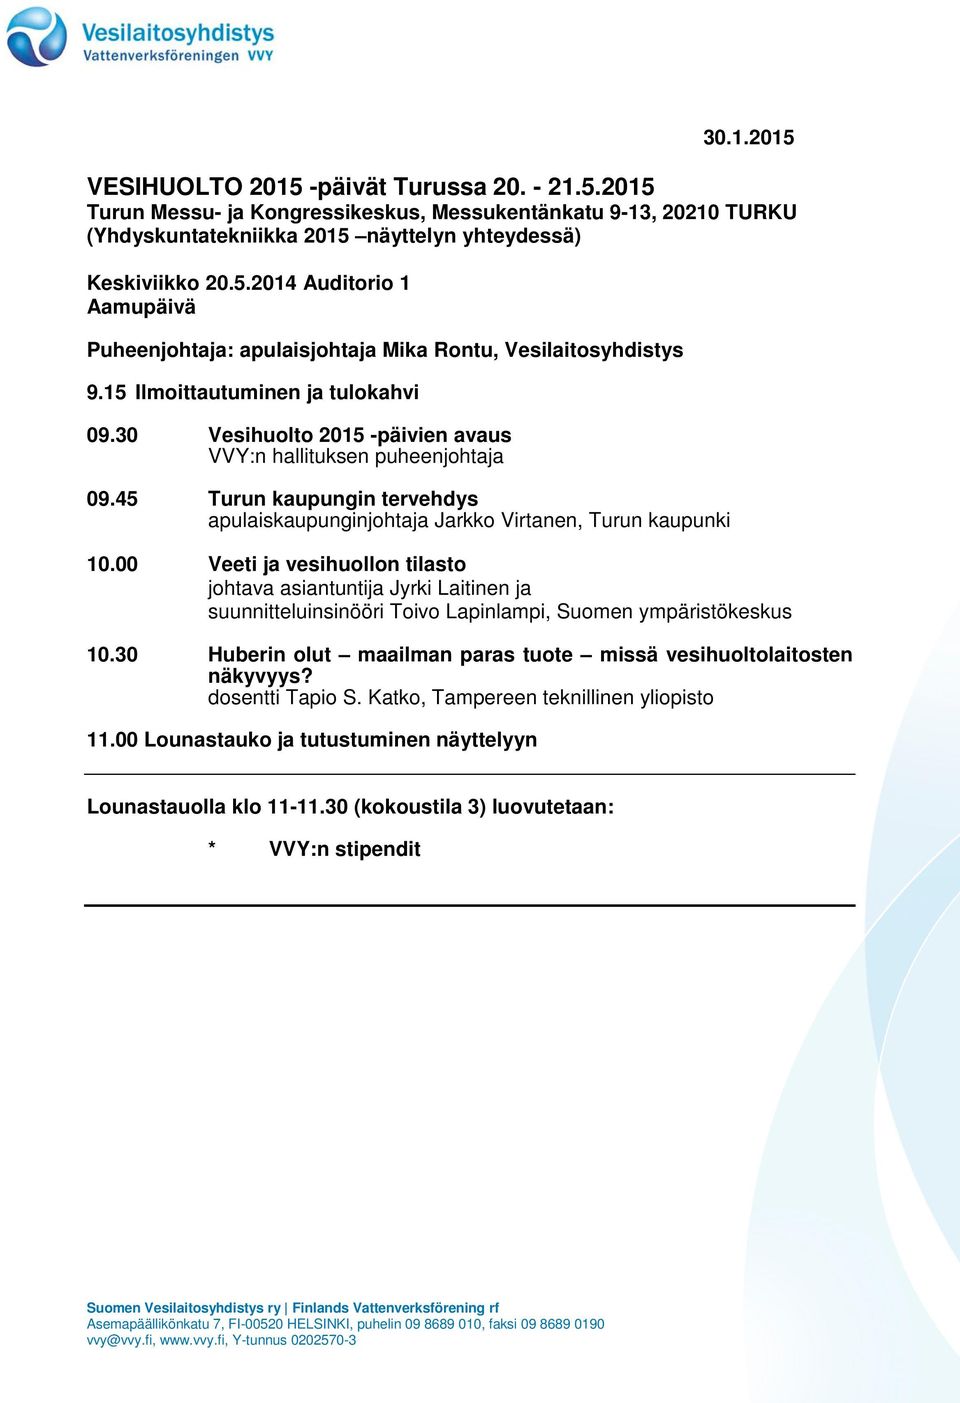 00 Veeti ja vesihuollon tilasto johtava asiantuntija Jyrki Laitinen ja suunnitteluinsinööri Toivo Lapinlampi, Suomen ympäristökeskus 10.